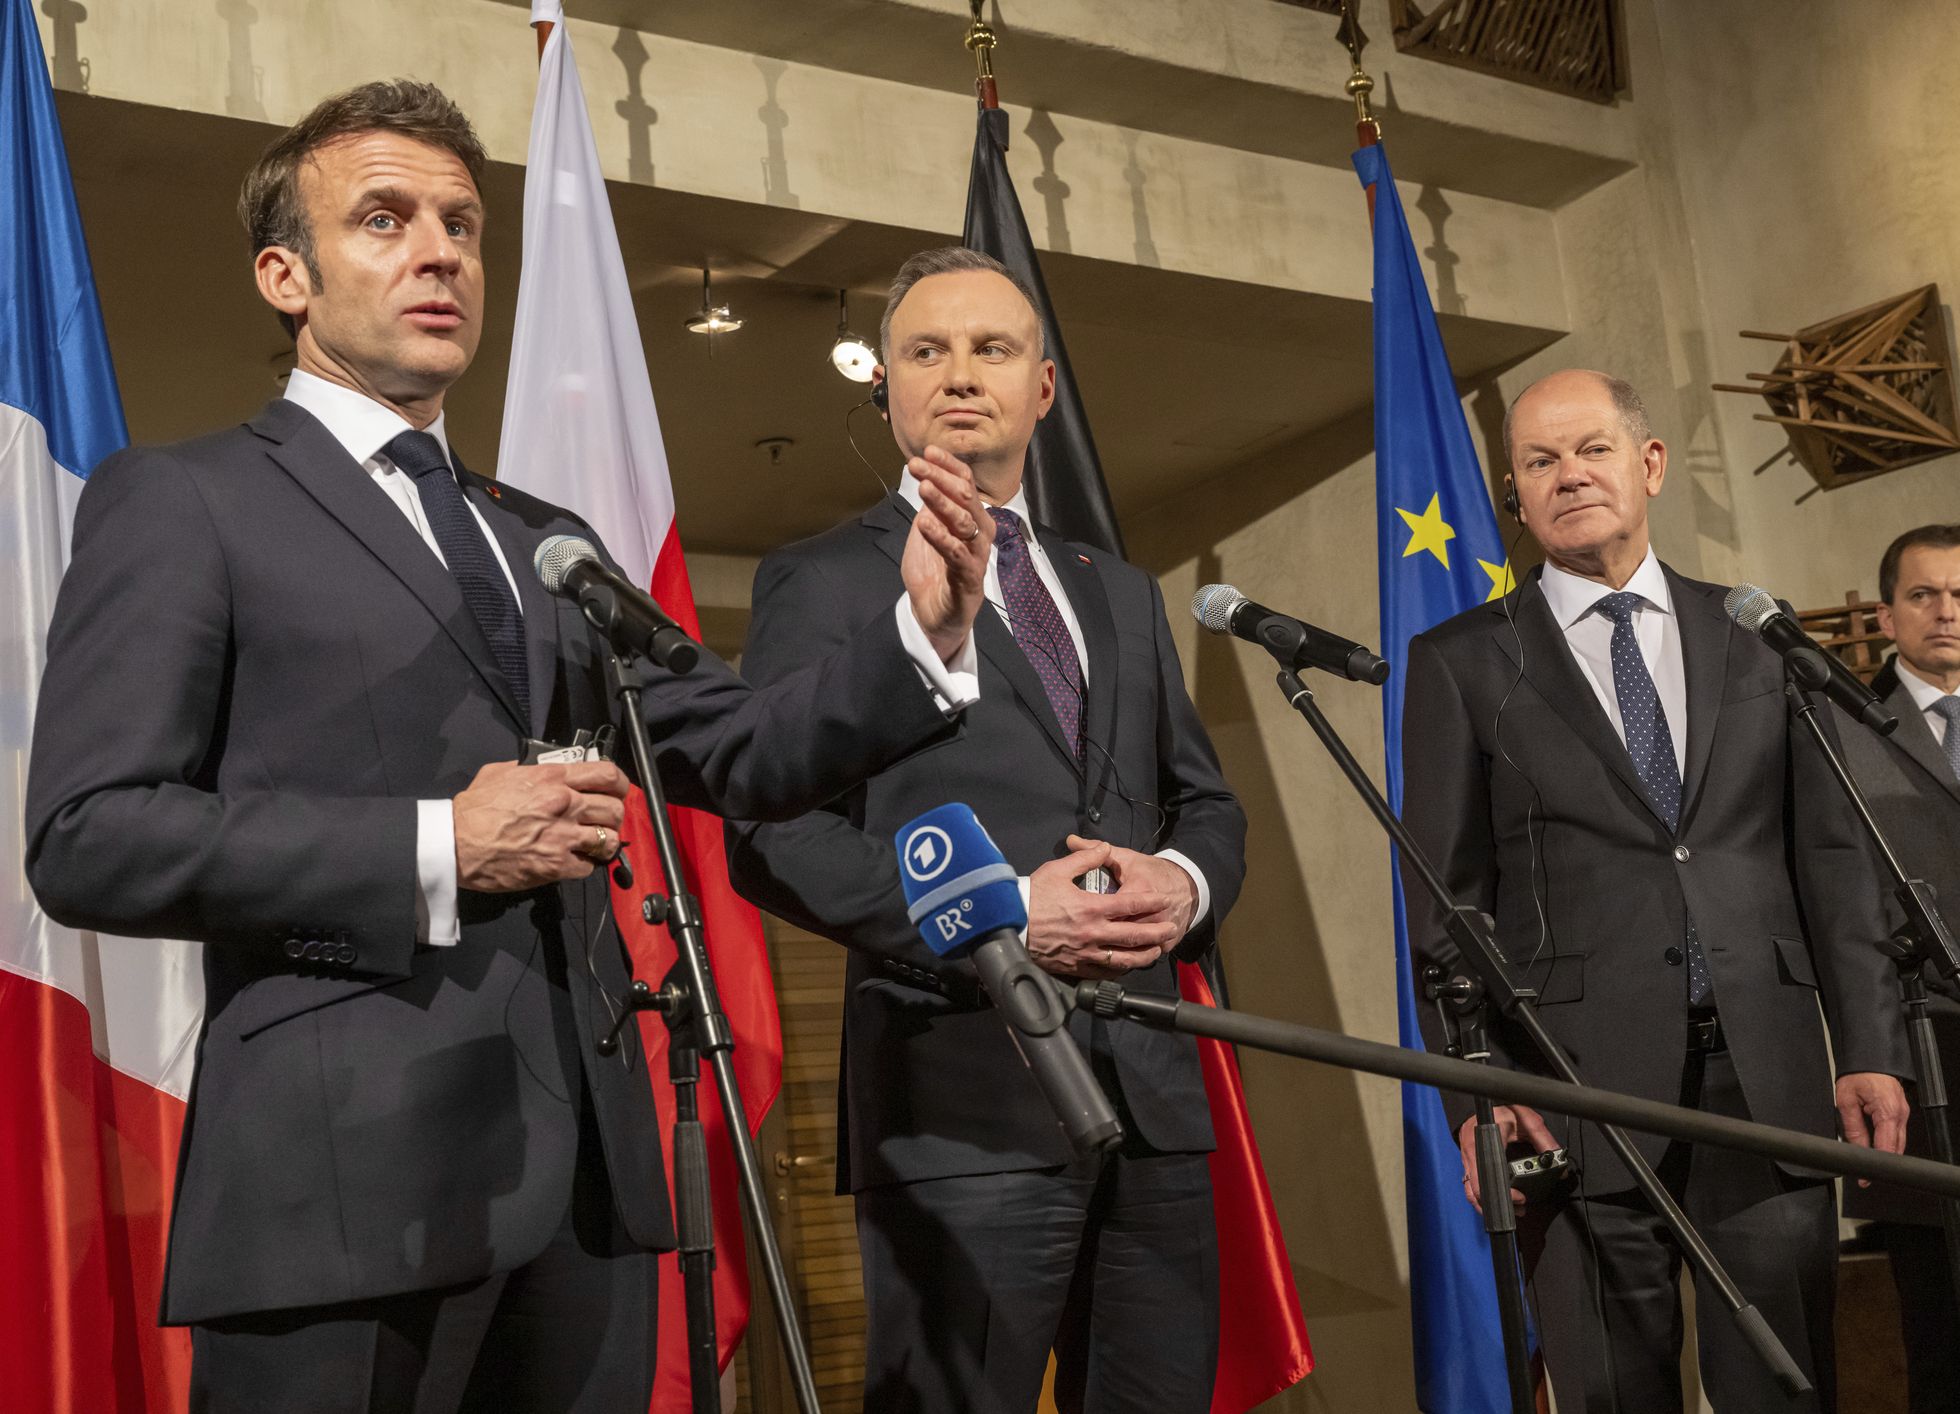 Euroopa liidrid arutasid Müncheni julgeolekukonverentsil Ukraina edasise aitamise võimalusi. Vasakult: Prantsuse president Emmanuel Macron, Poola president Andrzej Duda.